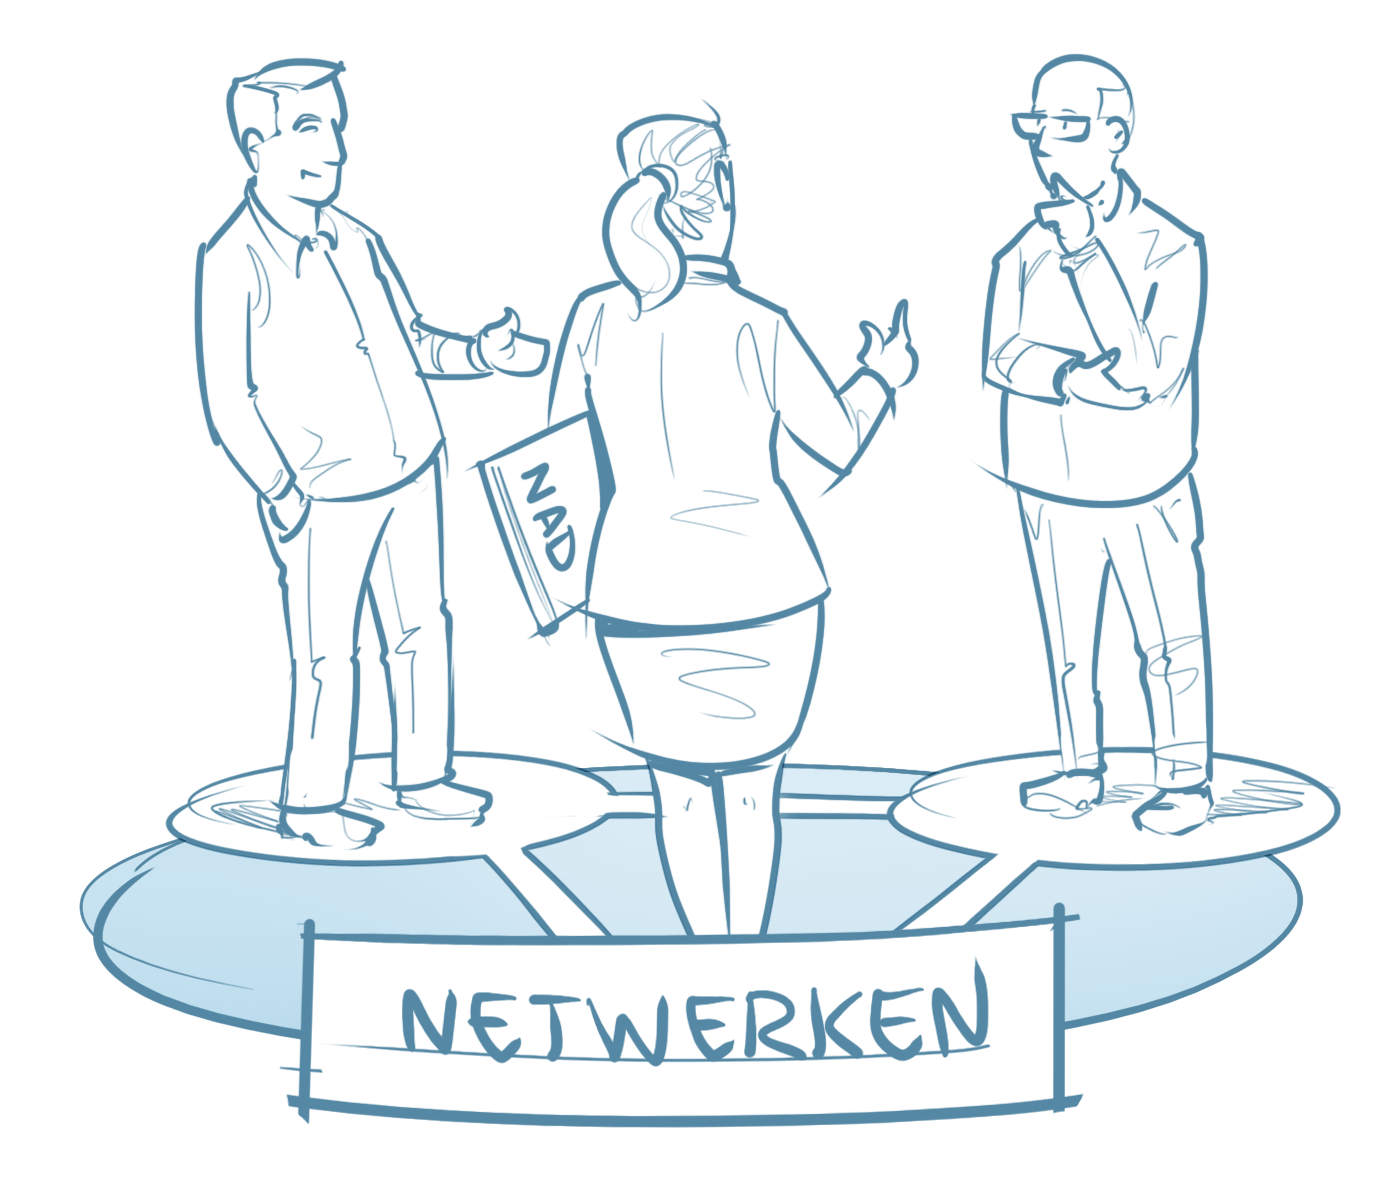 Illustratie van drie mensen in gesprek, verbeelding van het netwerken in het NAD.